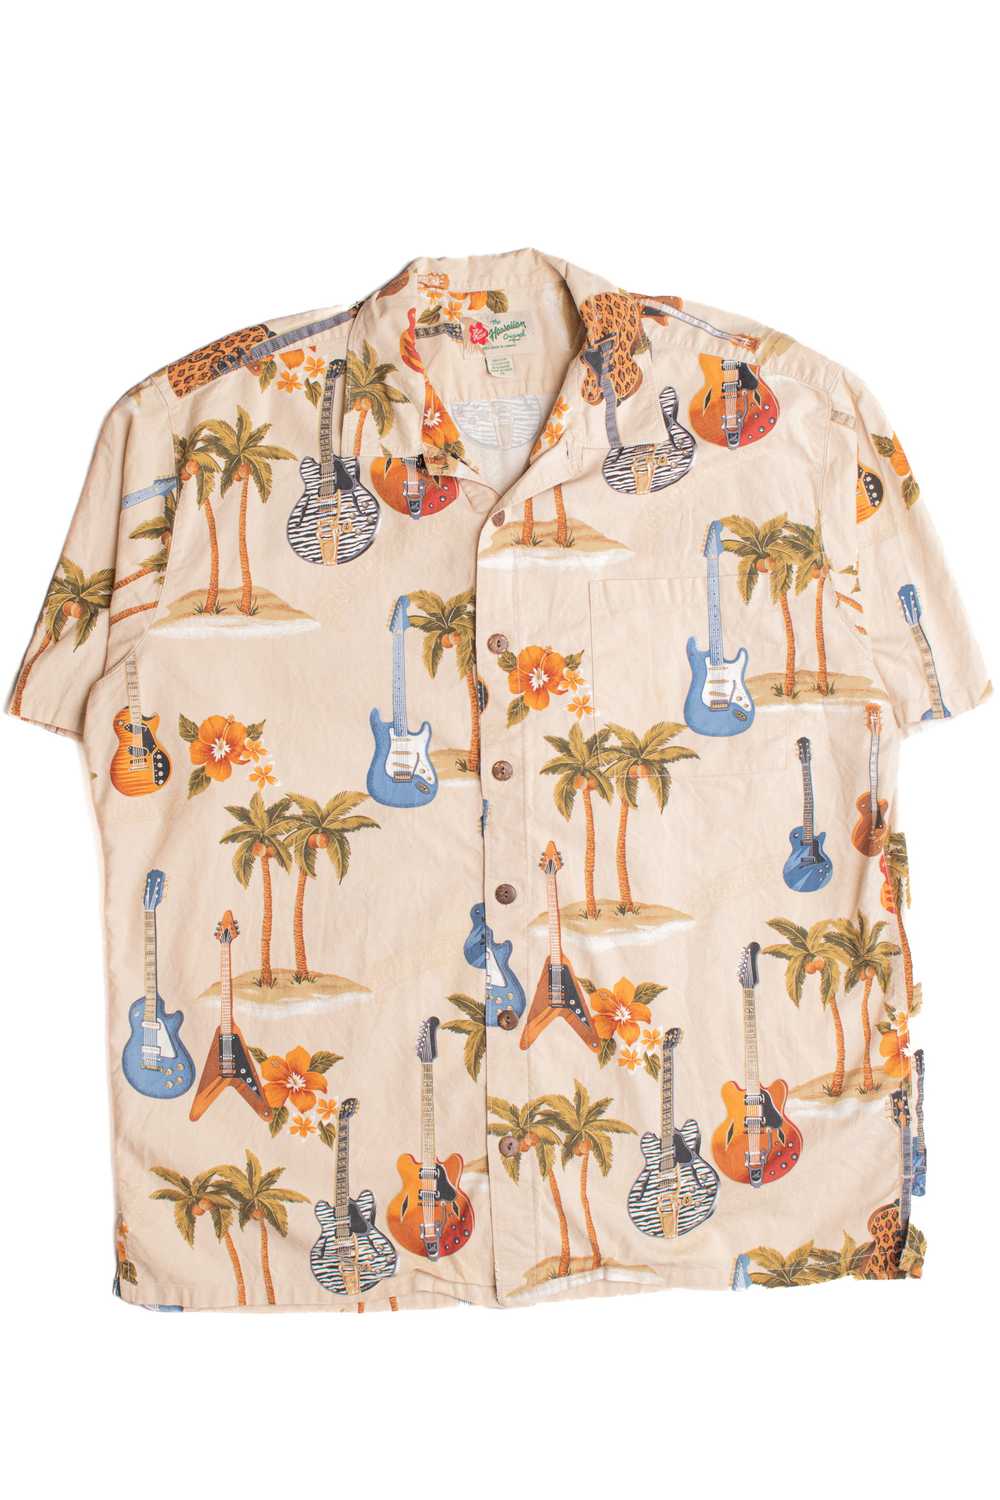 Hilo Hattie Hawaiian Shirt 2268 - image 1